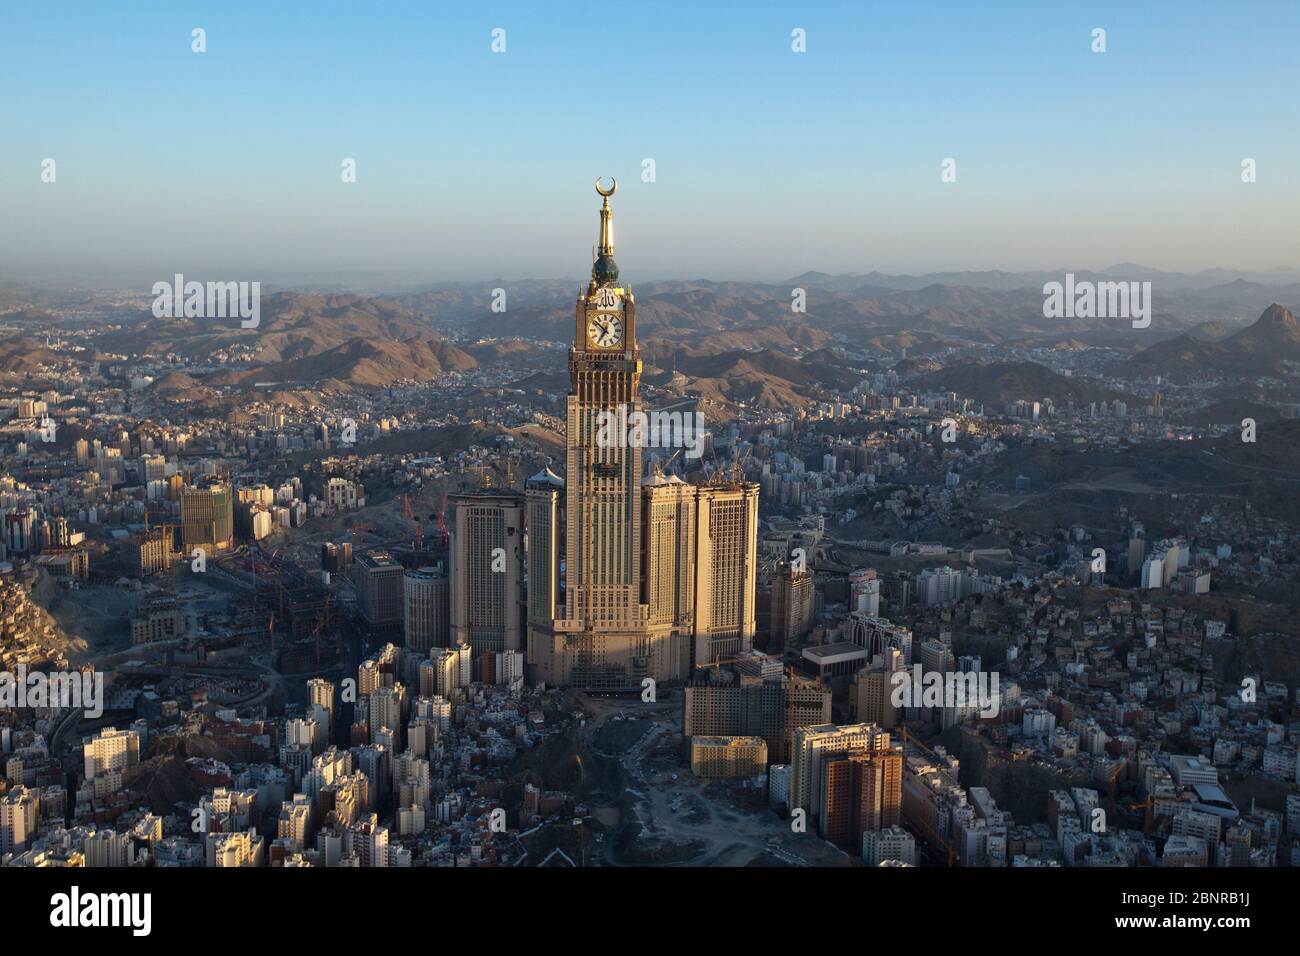 Abraj Al Bait, Saudi Arabia, Makkah Royal Clock Tower (Areal View) Stock Photo